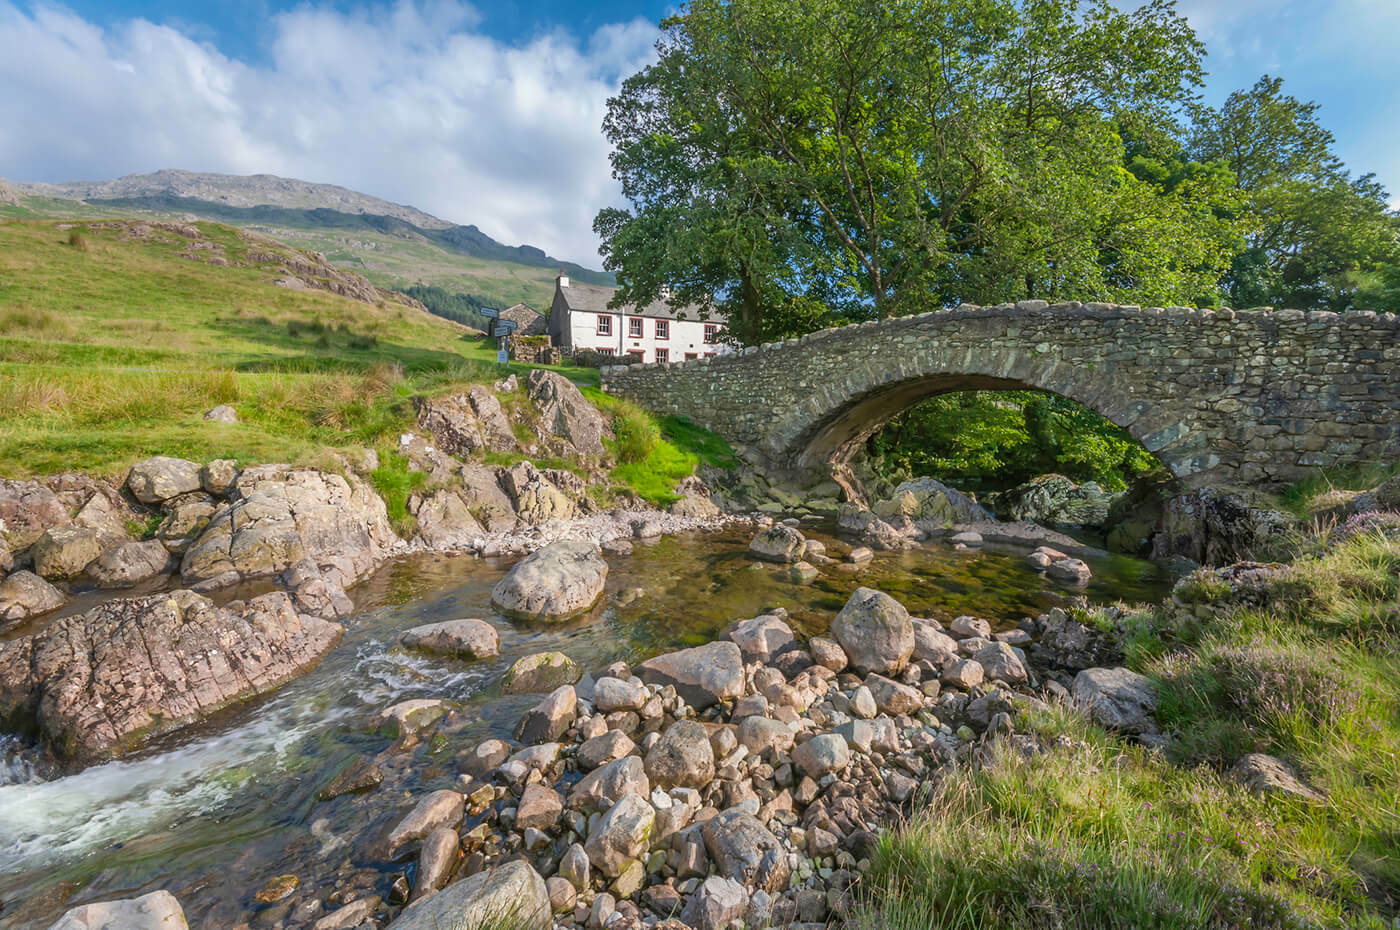 Bridge and property in Cumbria